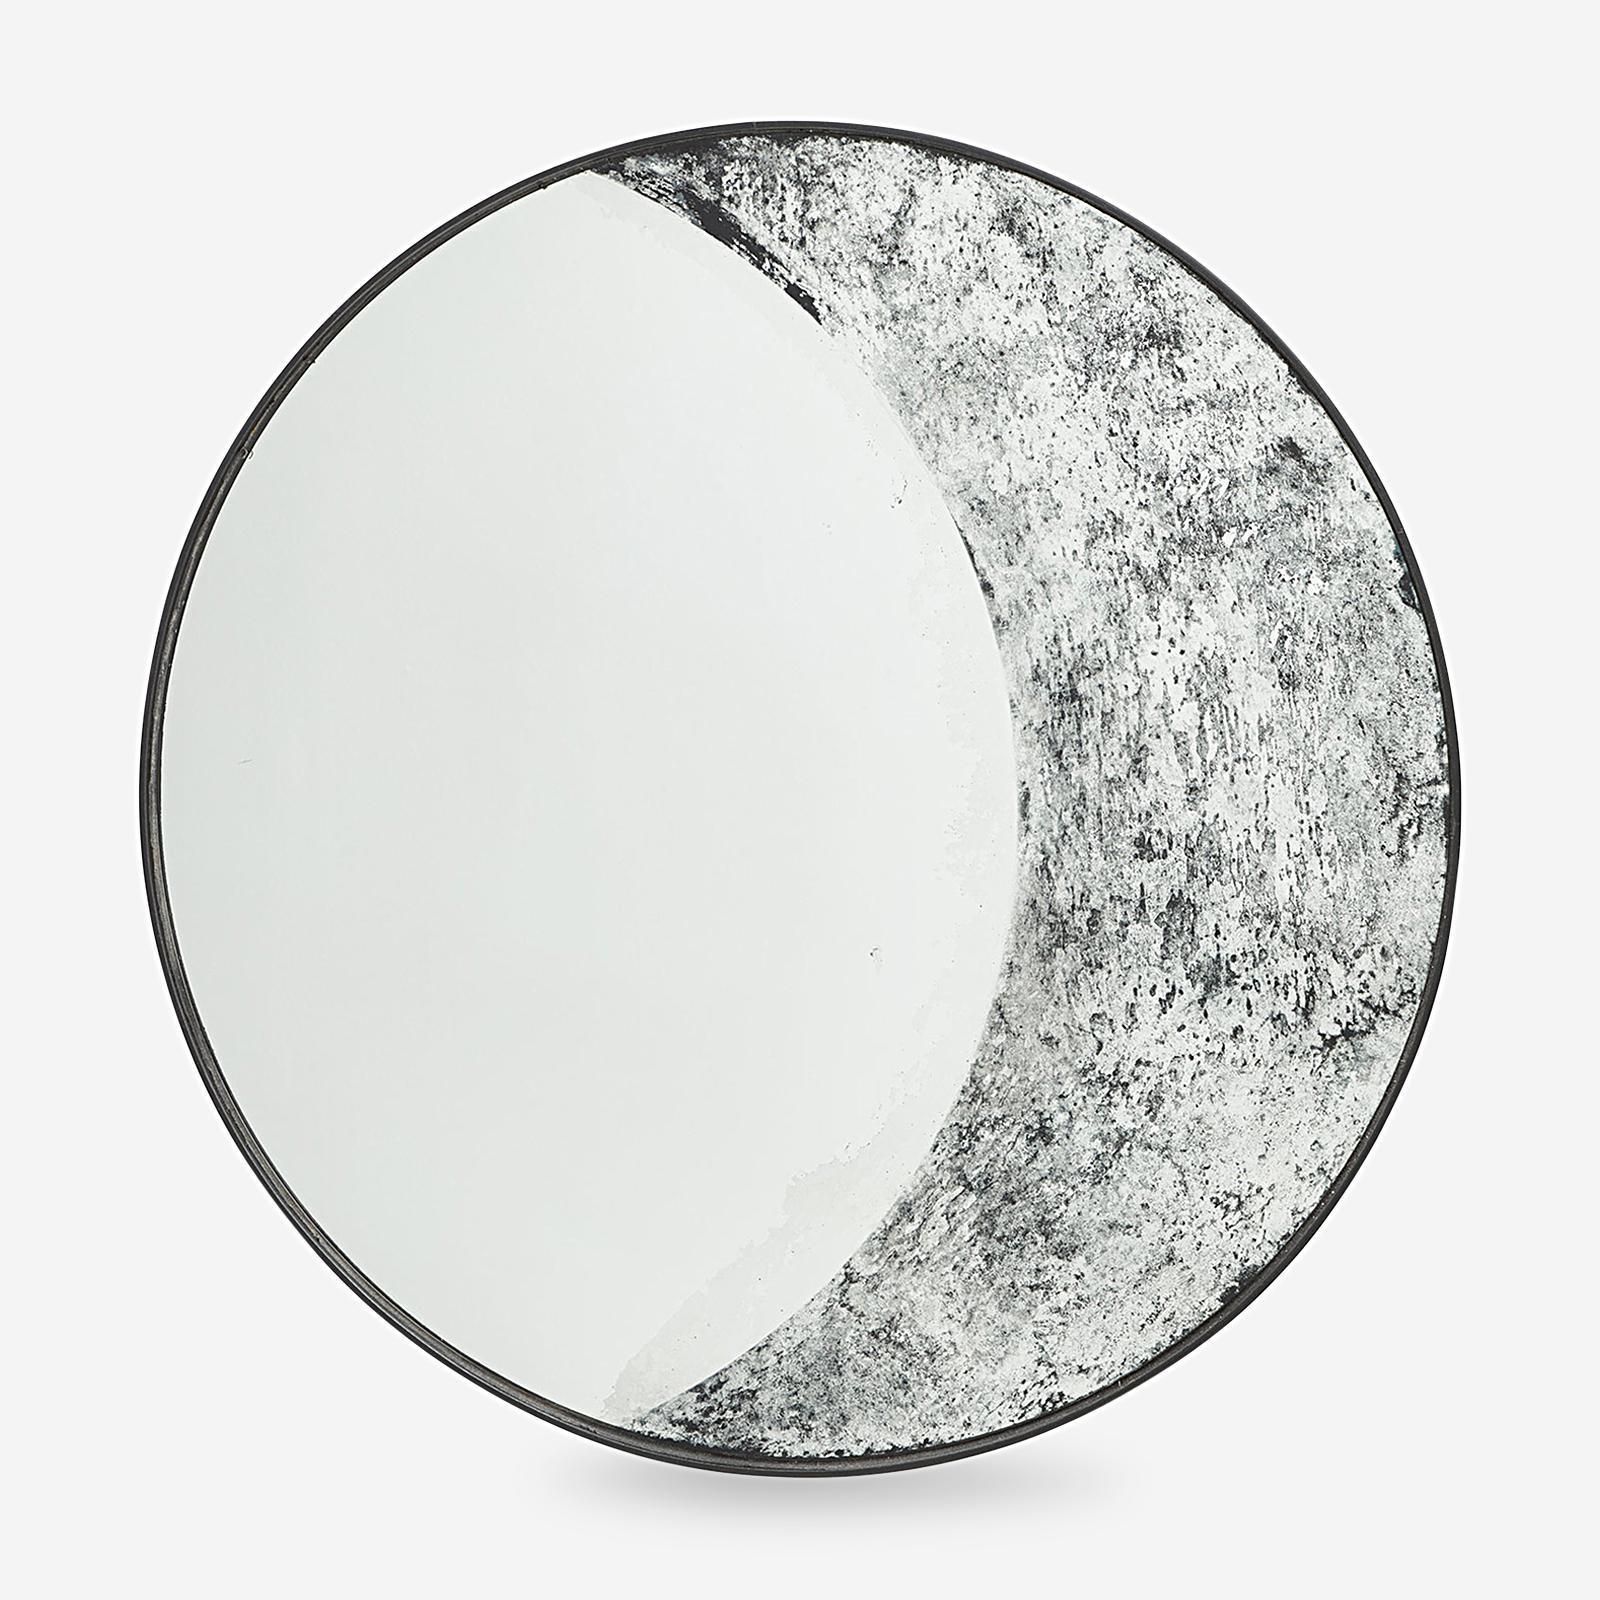 Зеркала moon. Зеркало Moon d70 раздвижное. Зеркало Мун белый d600. Зеркало Луна. Зеркало полумесяц.